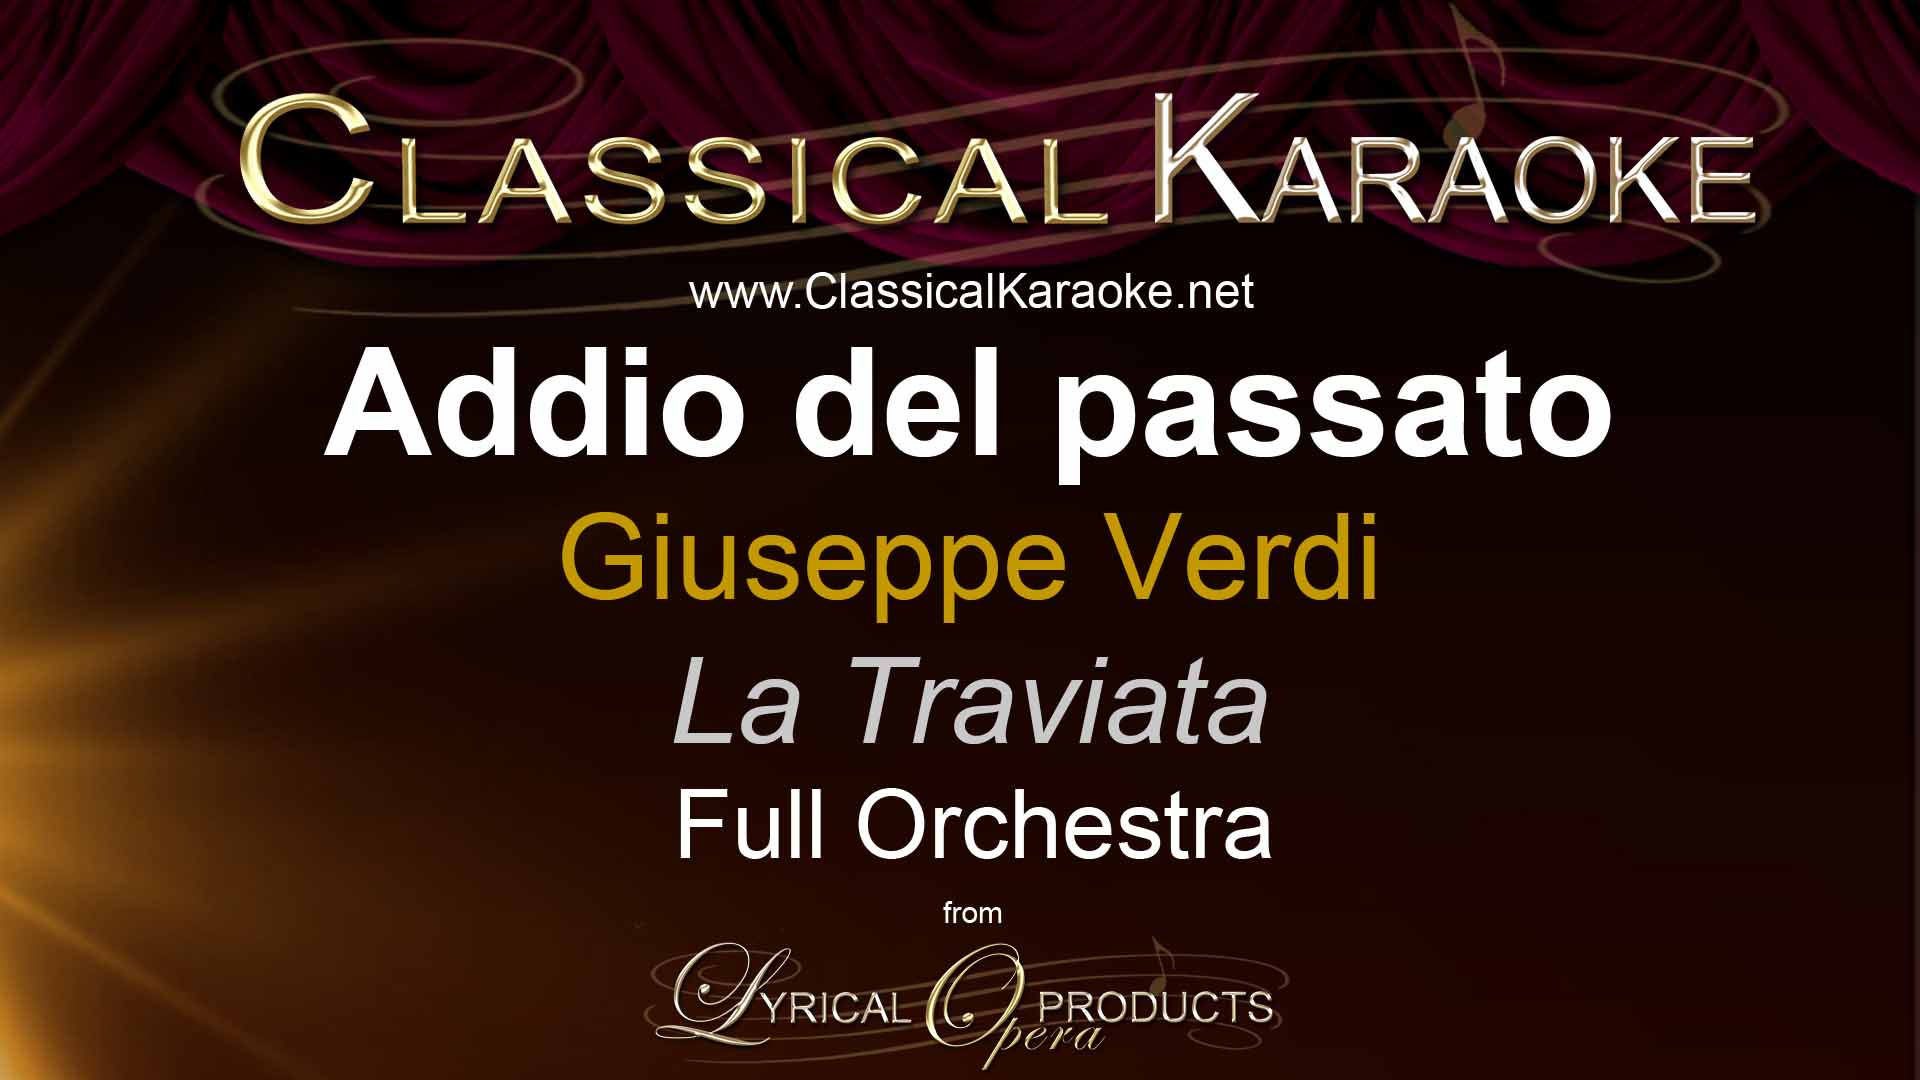 Addio del passato, from La Traviata, by Verdi, Full Orchestral Accompaniment (karaoke) track